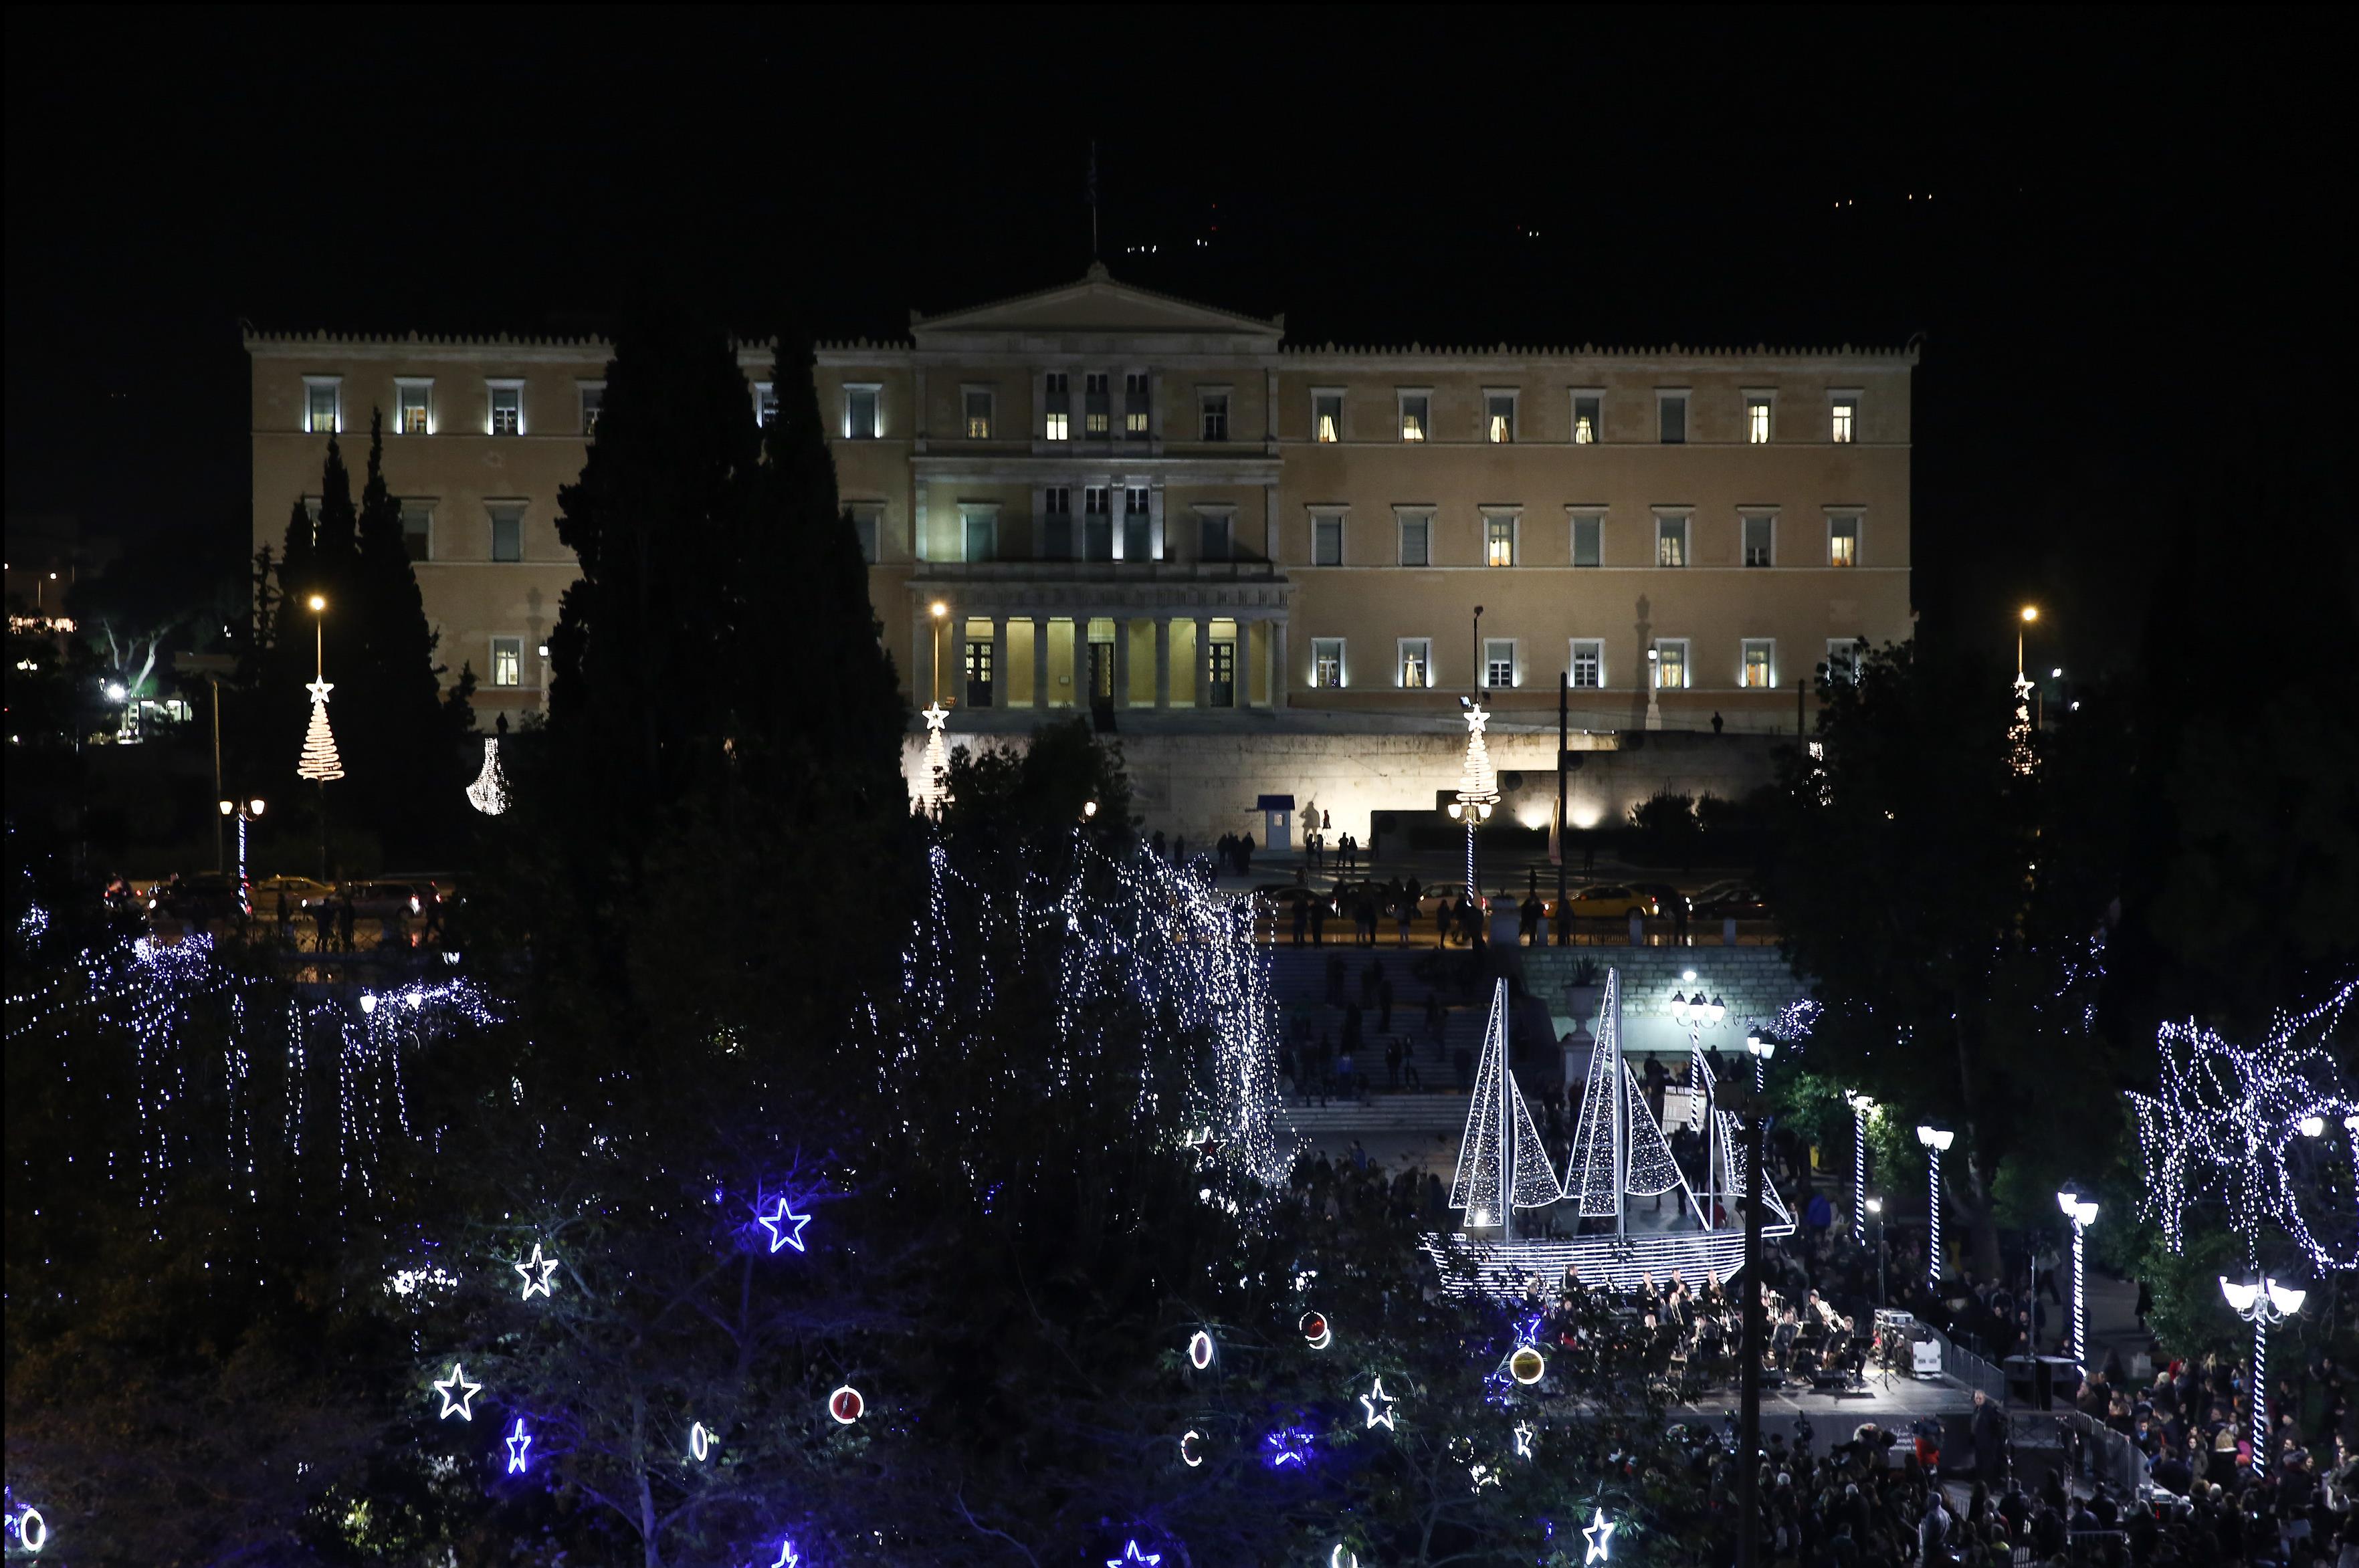 Αναψαν τα χριστουγεννιάτικα φώτα στην πλατεία Συντάγματος